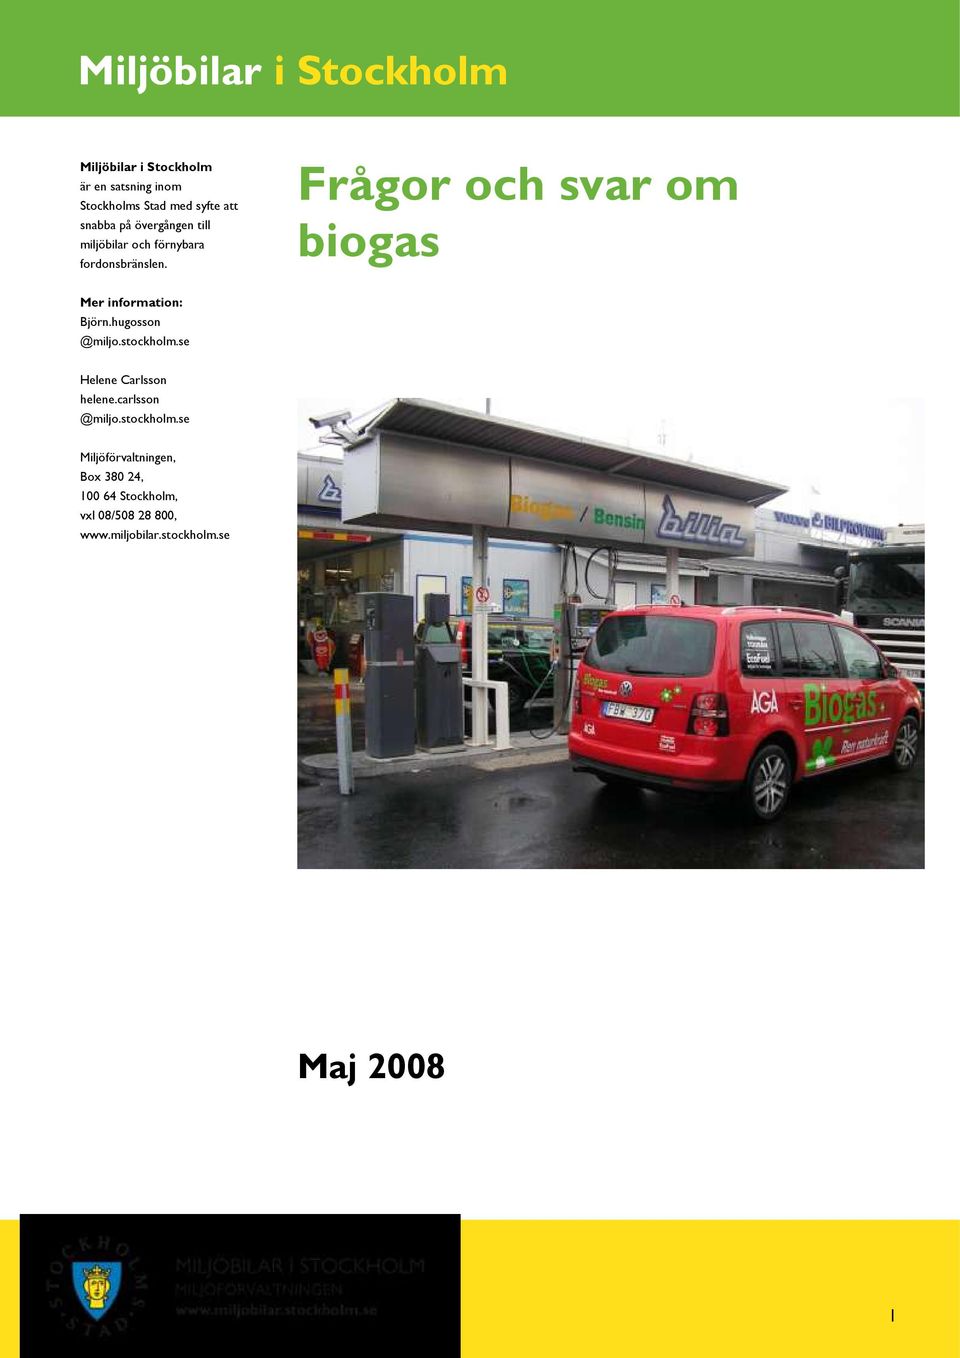 Frågor och svar om biogas Mer information: Björn.hugosson @miljo.stockholm.